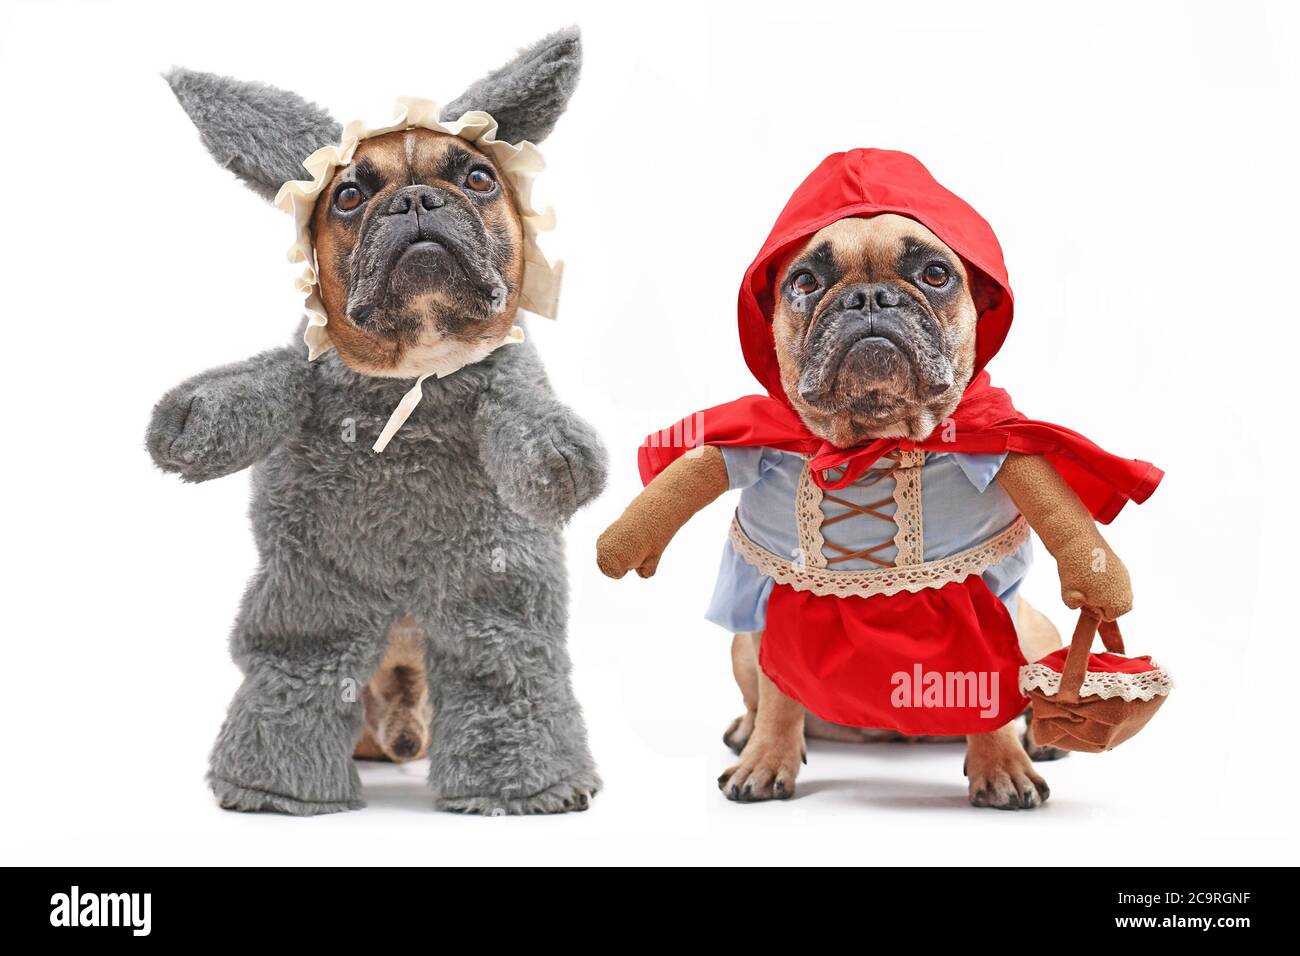 Los Bulldogs franceses vestidos como personajes de cuento de hadas Little Red Riding Hood y mal lobo con perro de cuerpo entero disfraces de Halloween con falsos brazos aislados o de